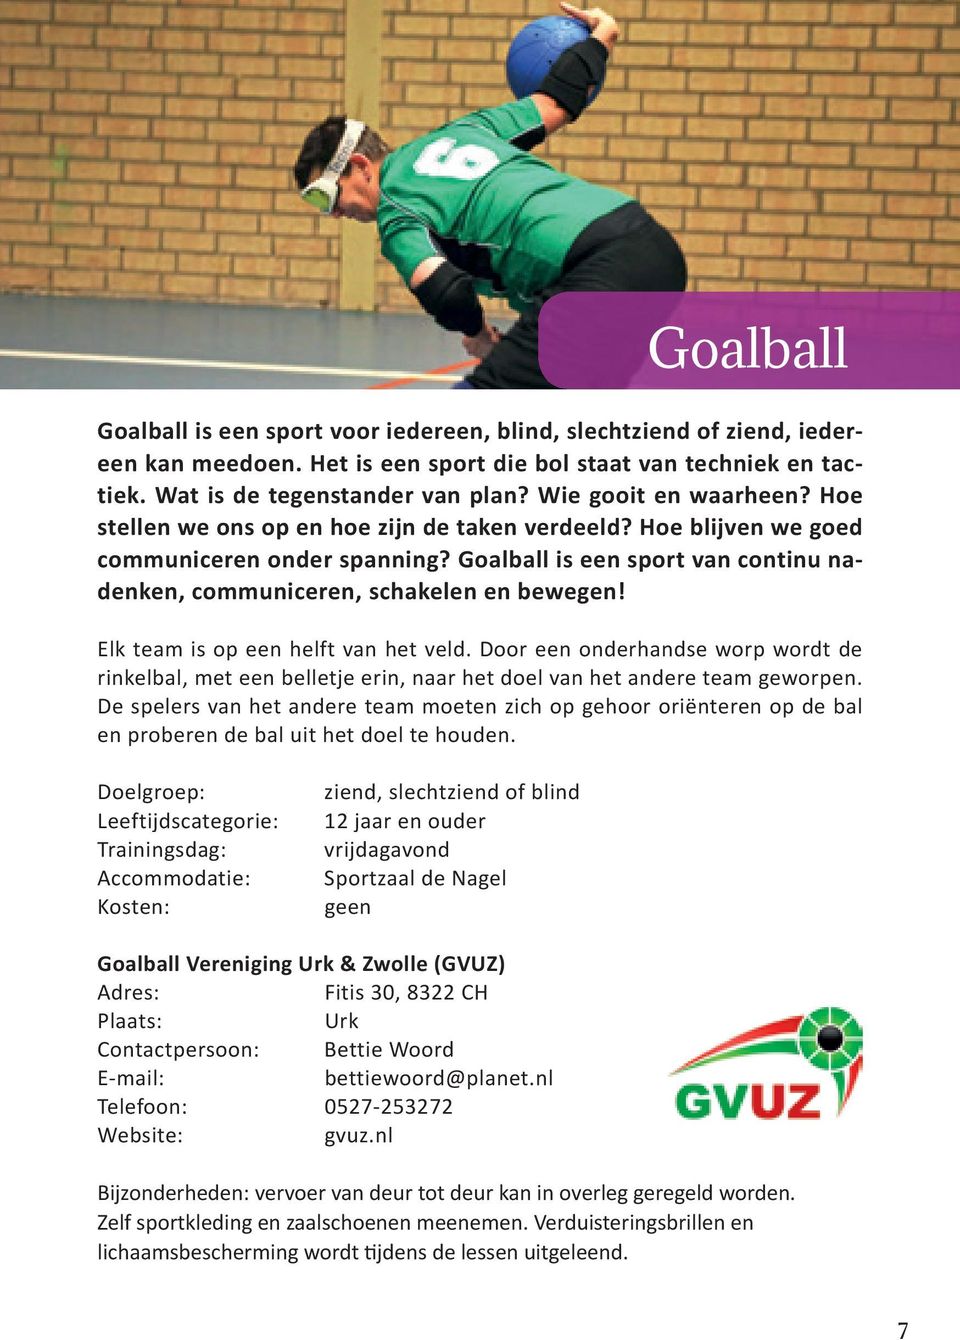 Goalball is een sport van continu nadenken, communiceren, schakelen en bewegen! Elk team is op een helft van het veld.